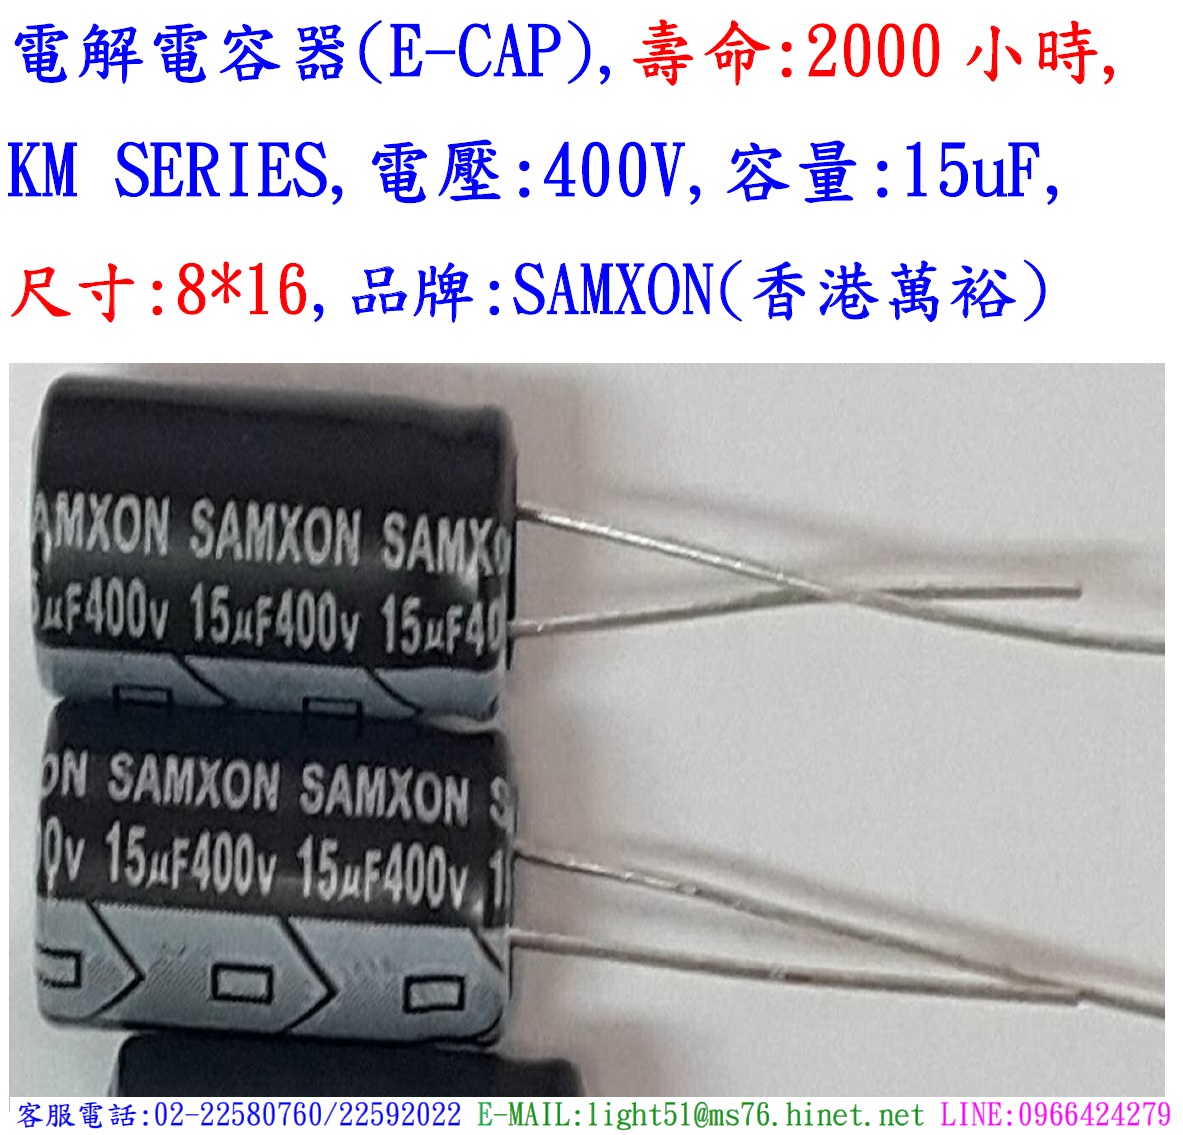 KM,400V,15uF,尺寸:8*16,電解電容器,壽命:2000小時,SAMXON(香港萬裕)